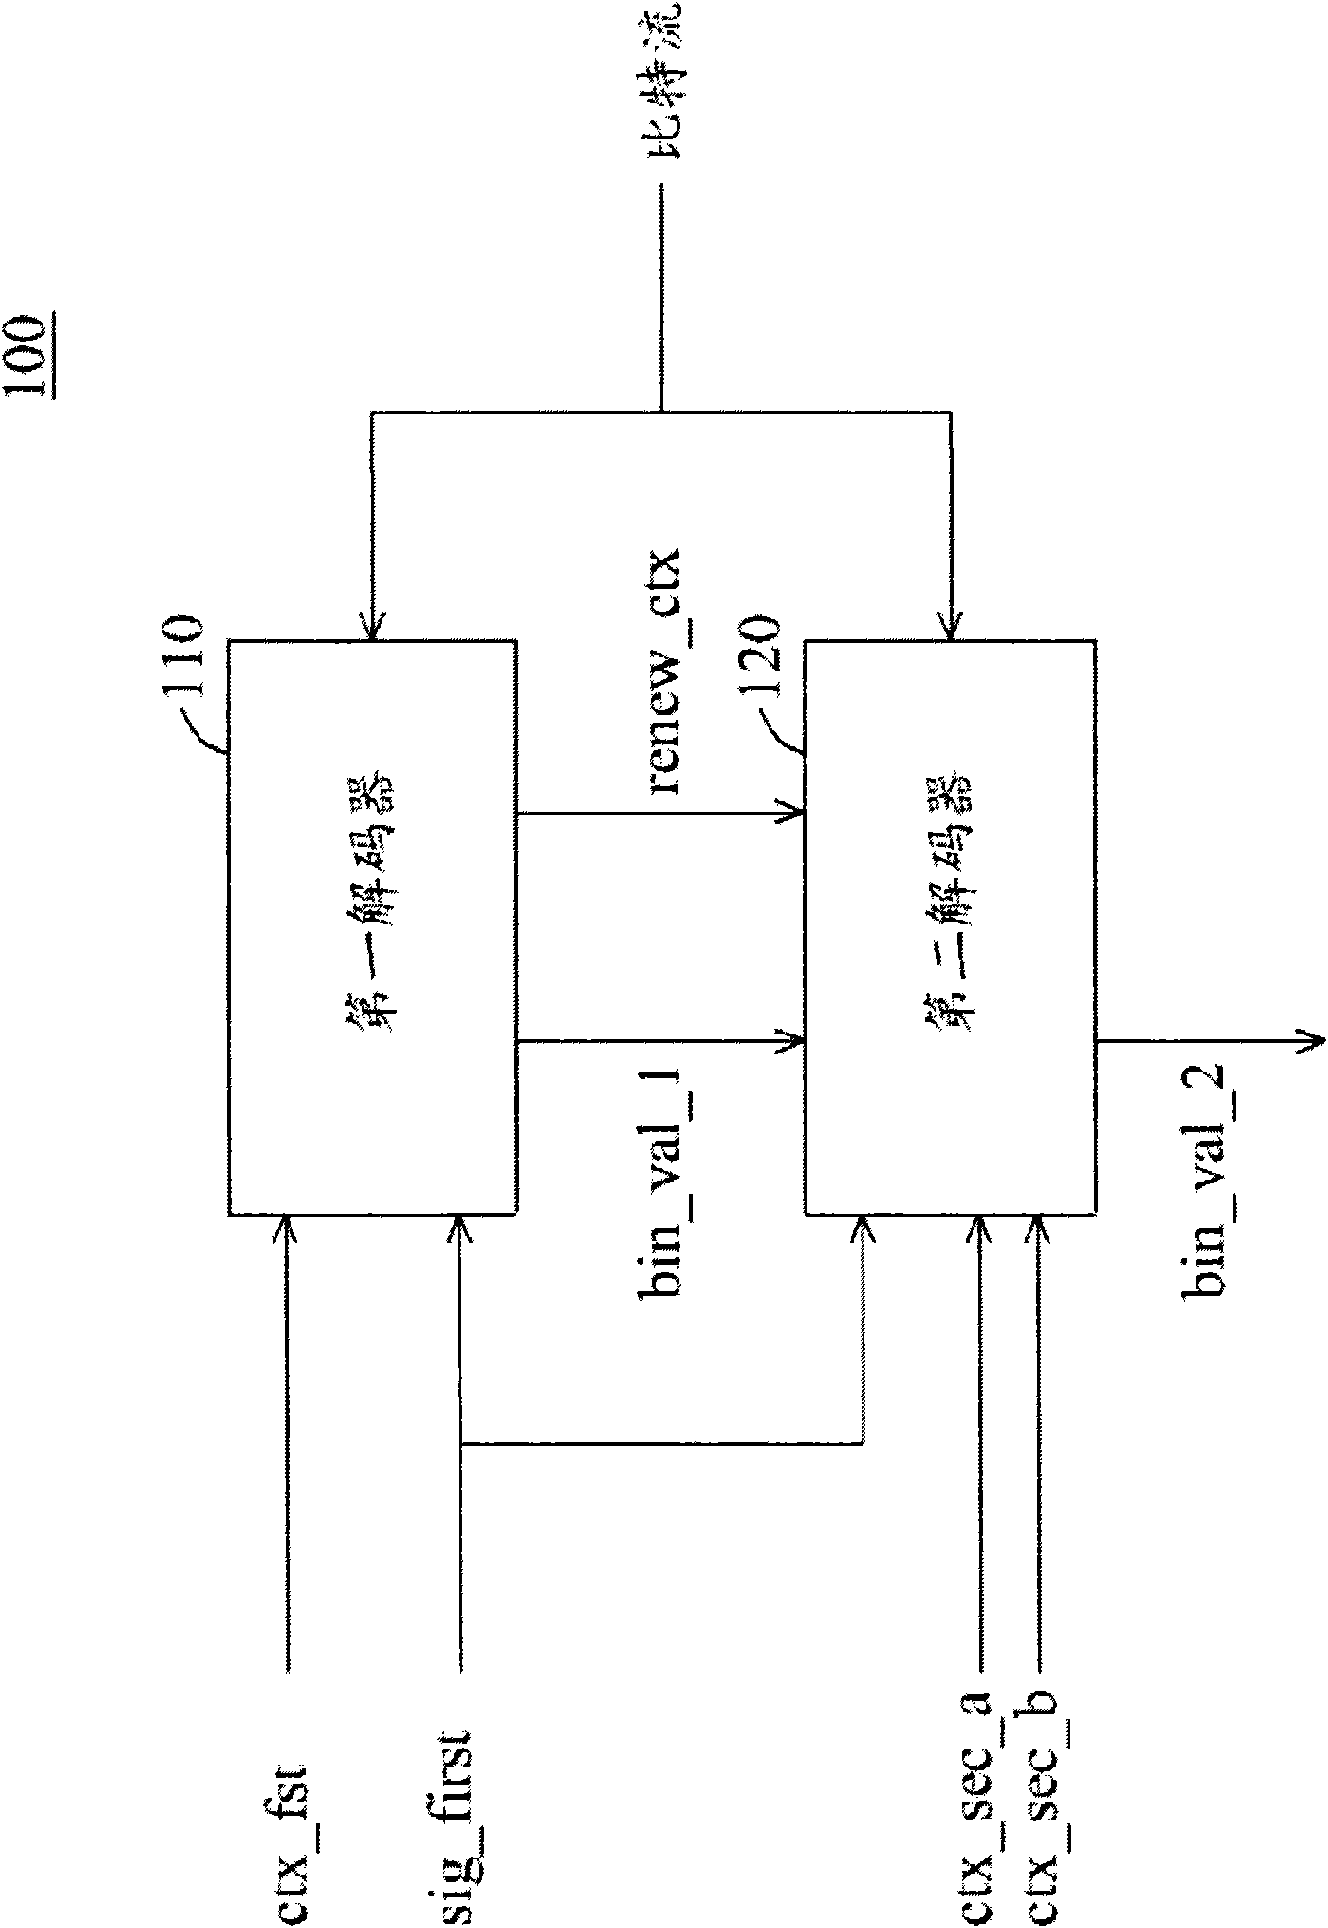 Cabac decoding unit and method